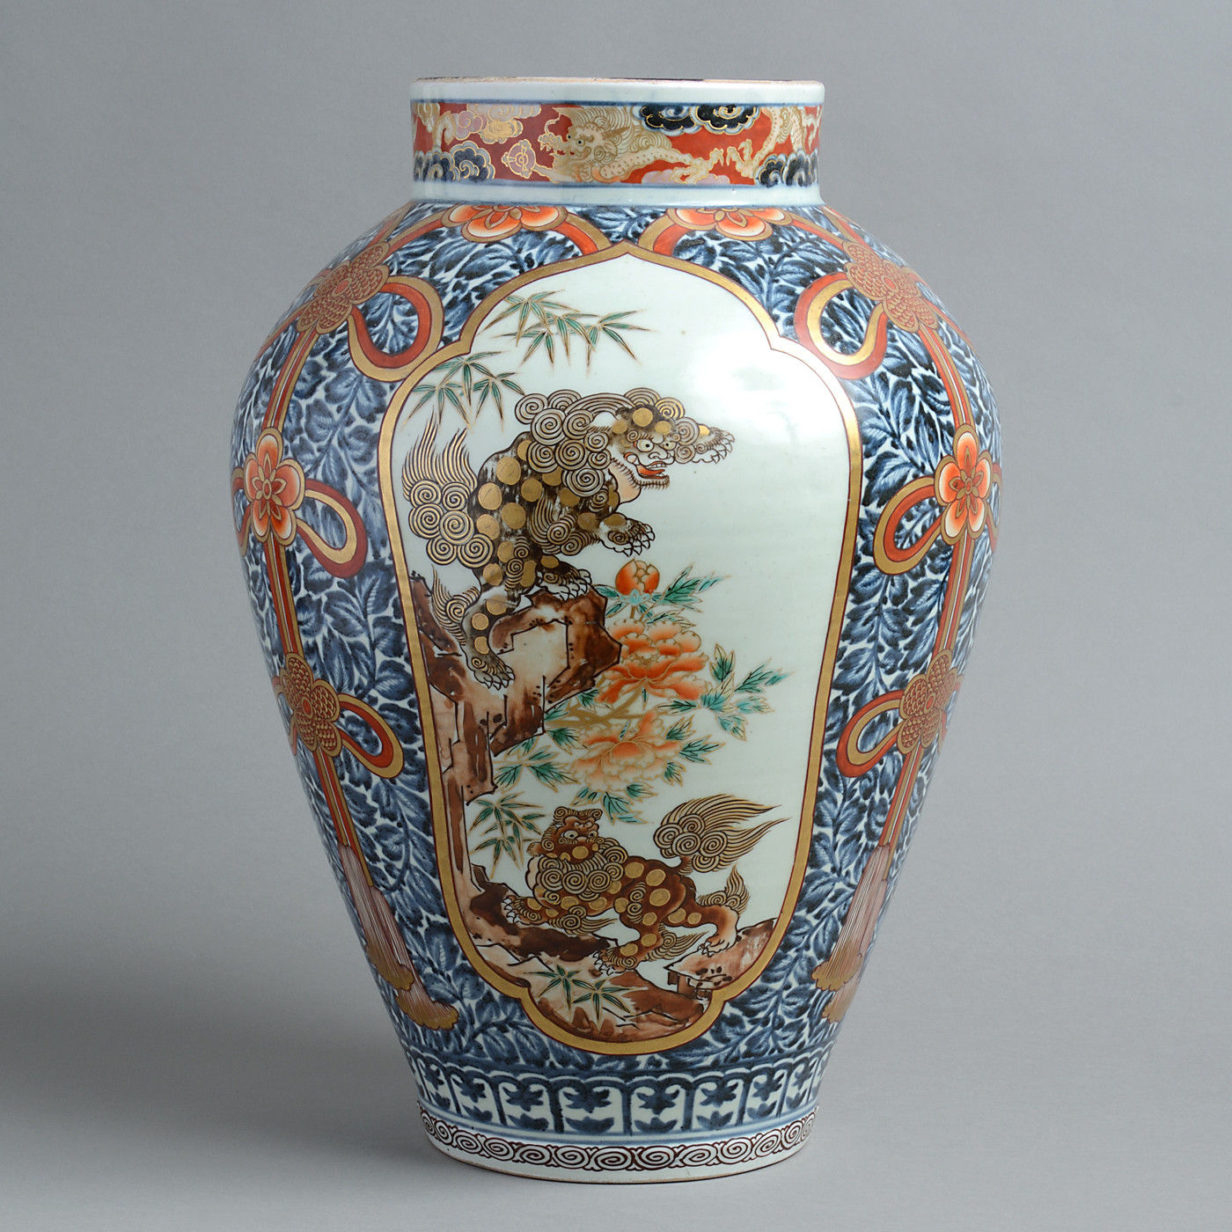 A fine 17th century imari vase